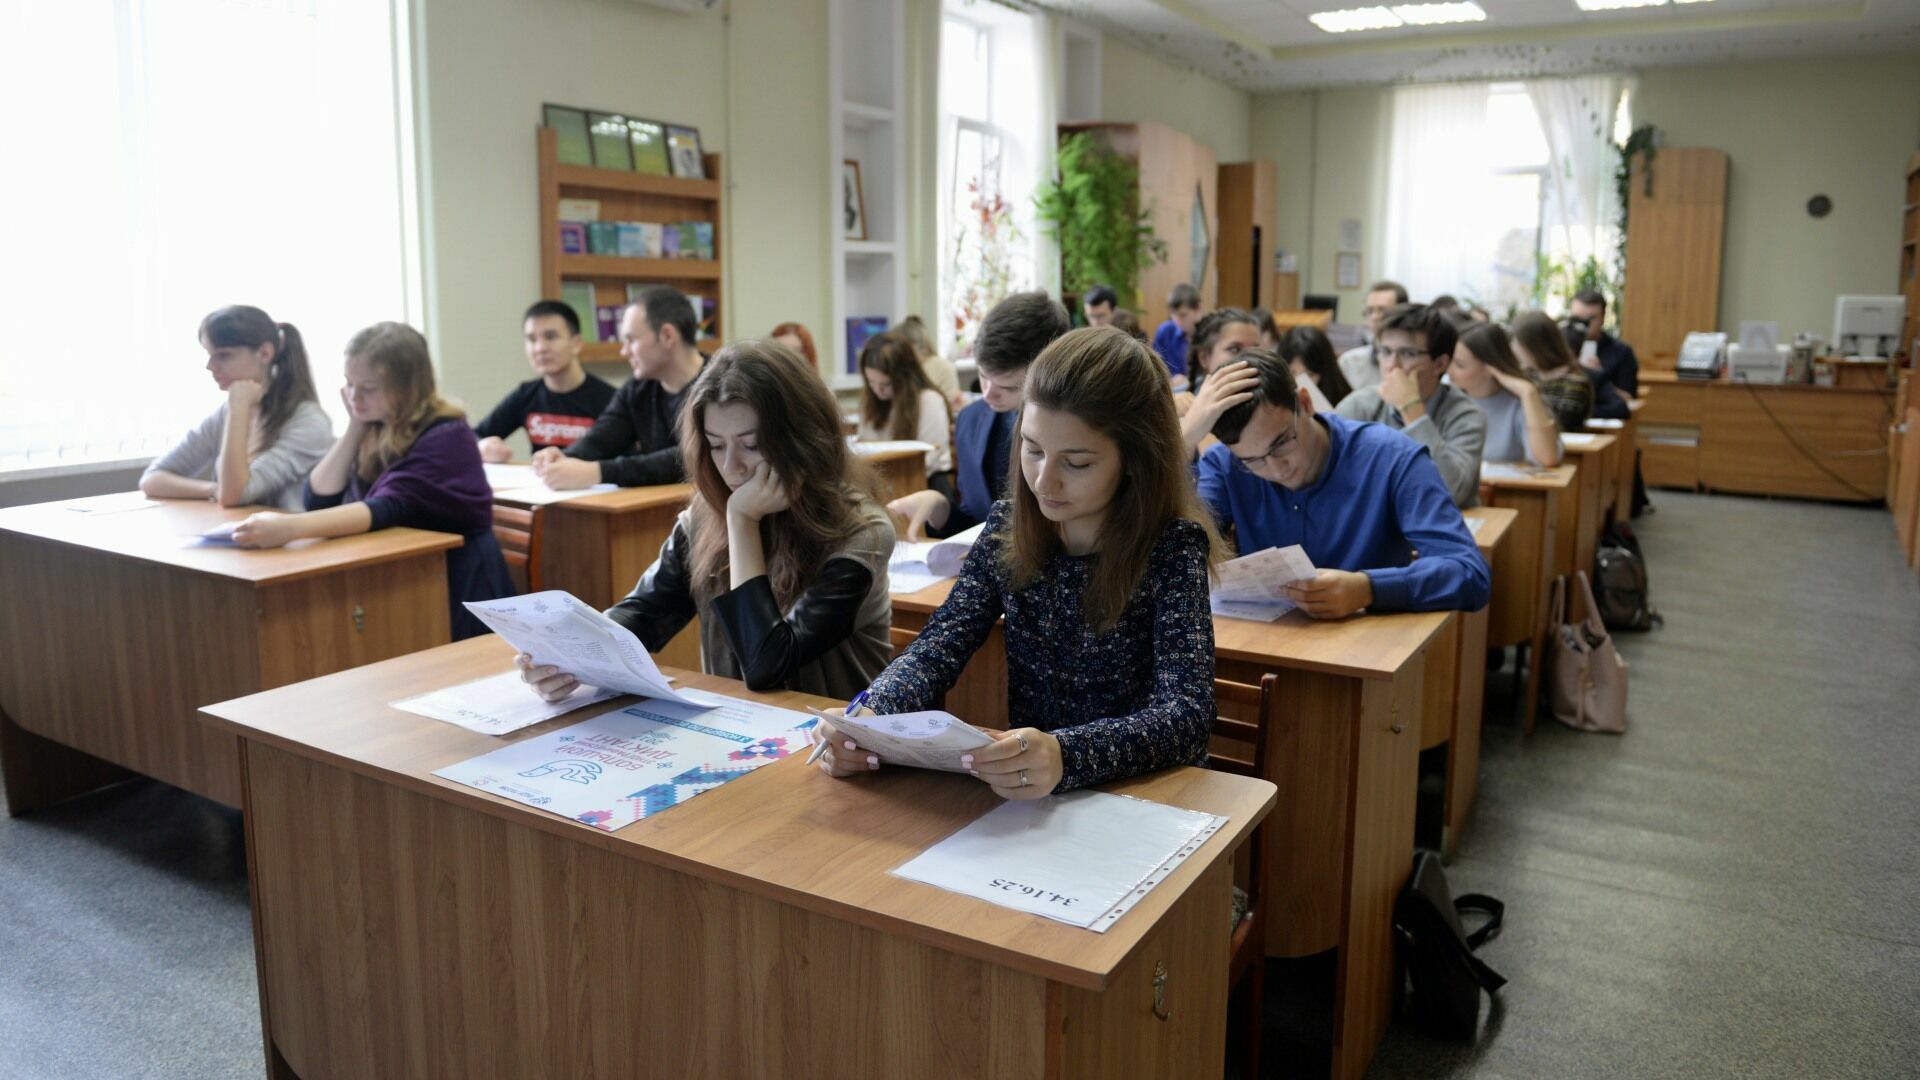 Шестерым выпускникам в Карелии придется пересдавать госэкзамены из-за шпаргалок